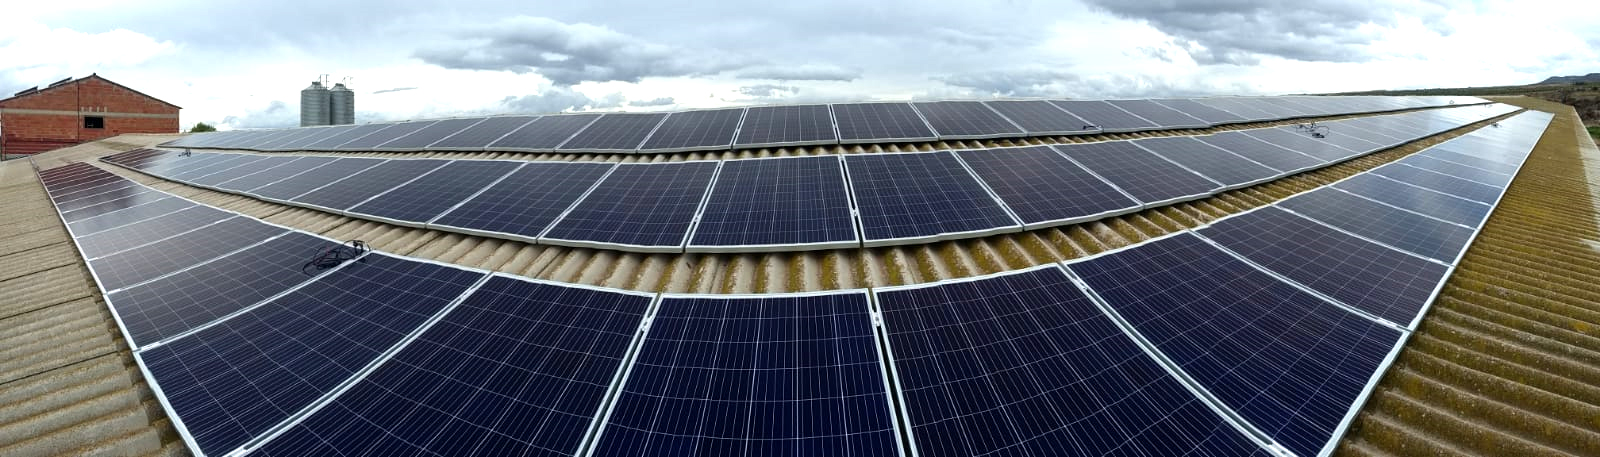 cubierta en granja con más de 150 placas solares fotovoltaicas para instalación de autoconsumo y ahorro energético mediante energias renovables